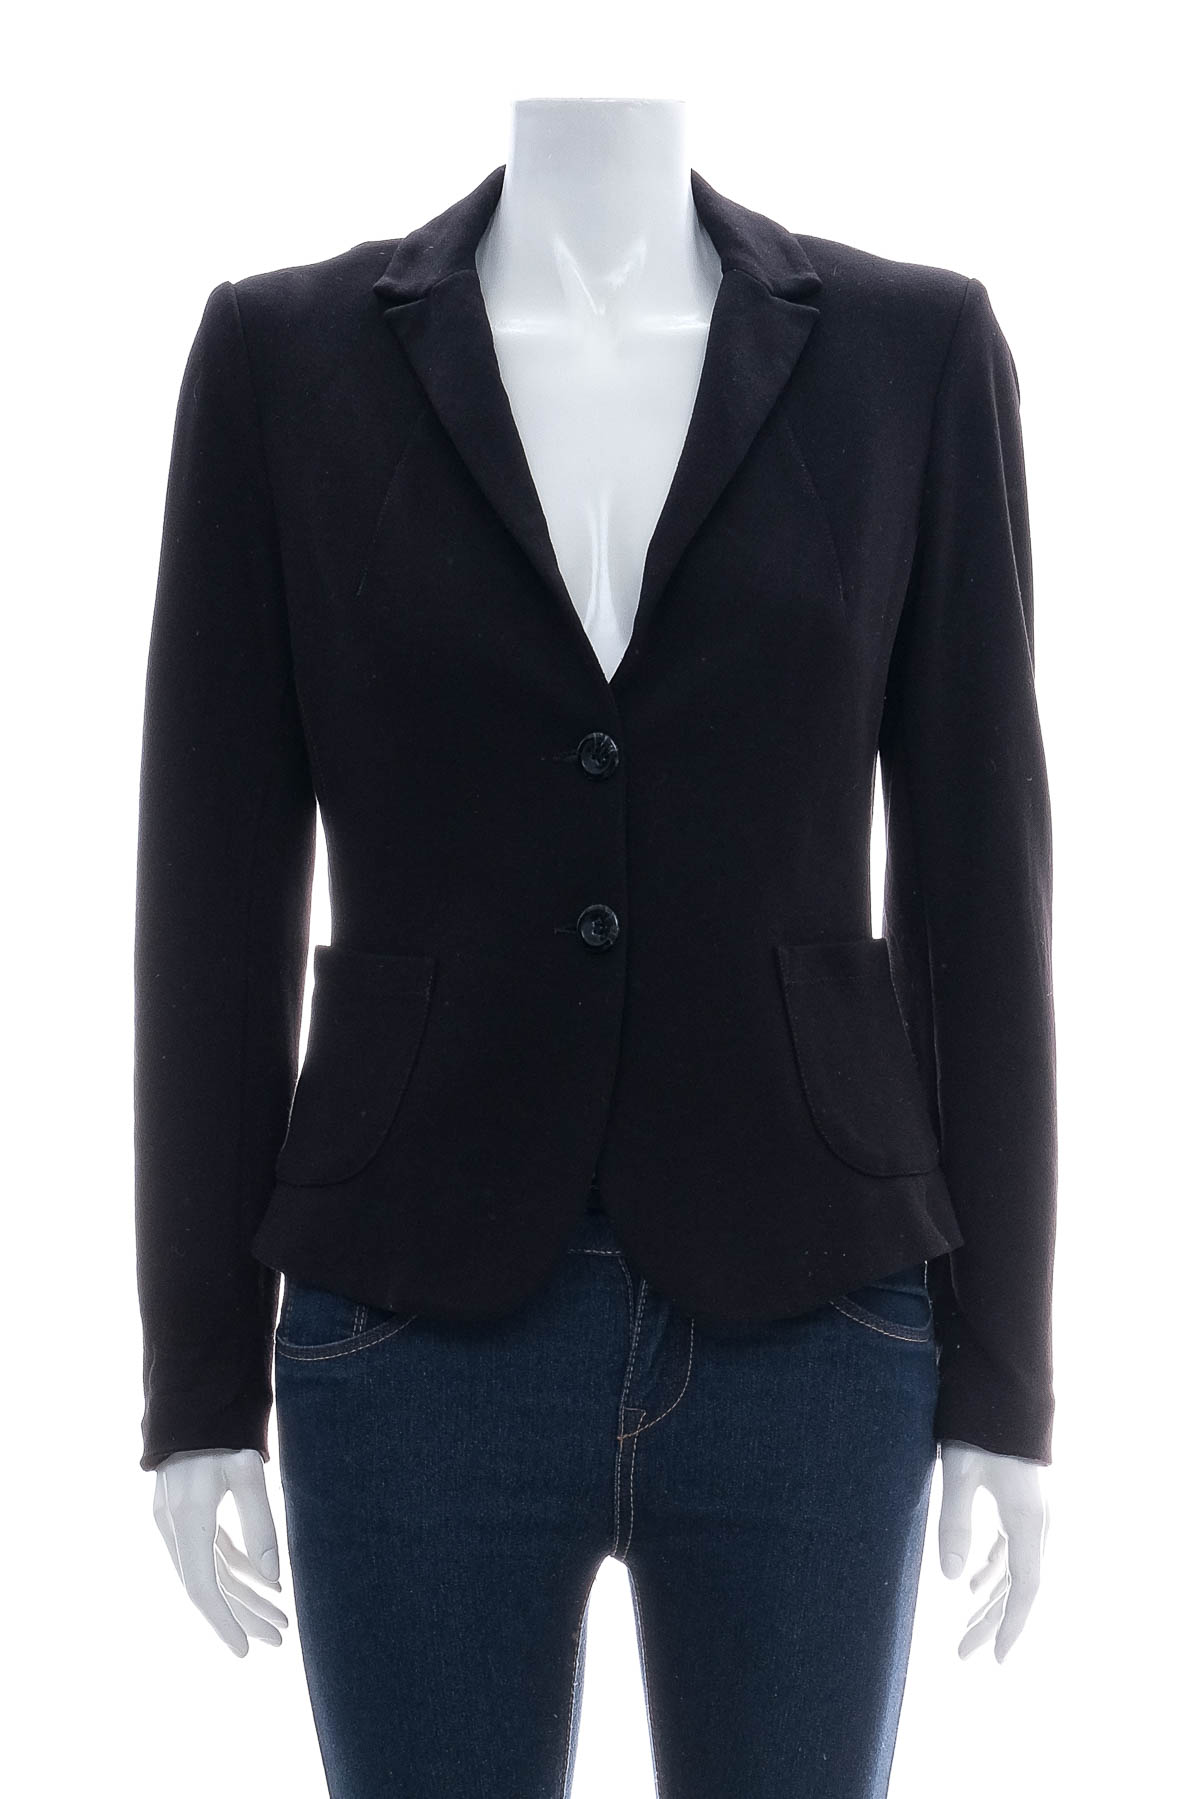 Women's blazer - Comma, - 0